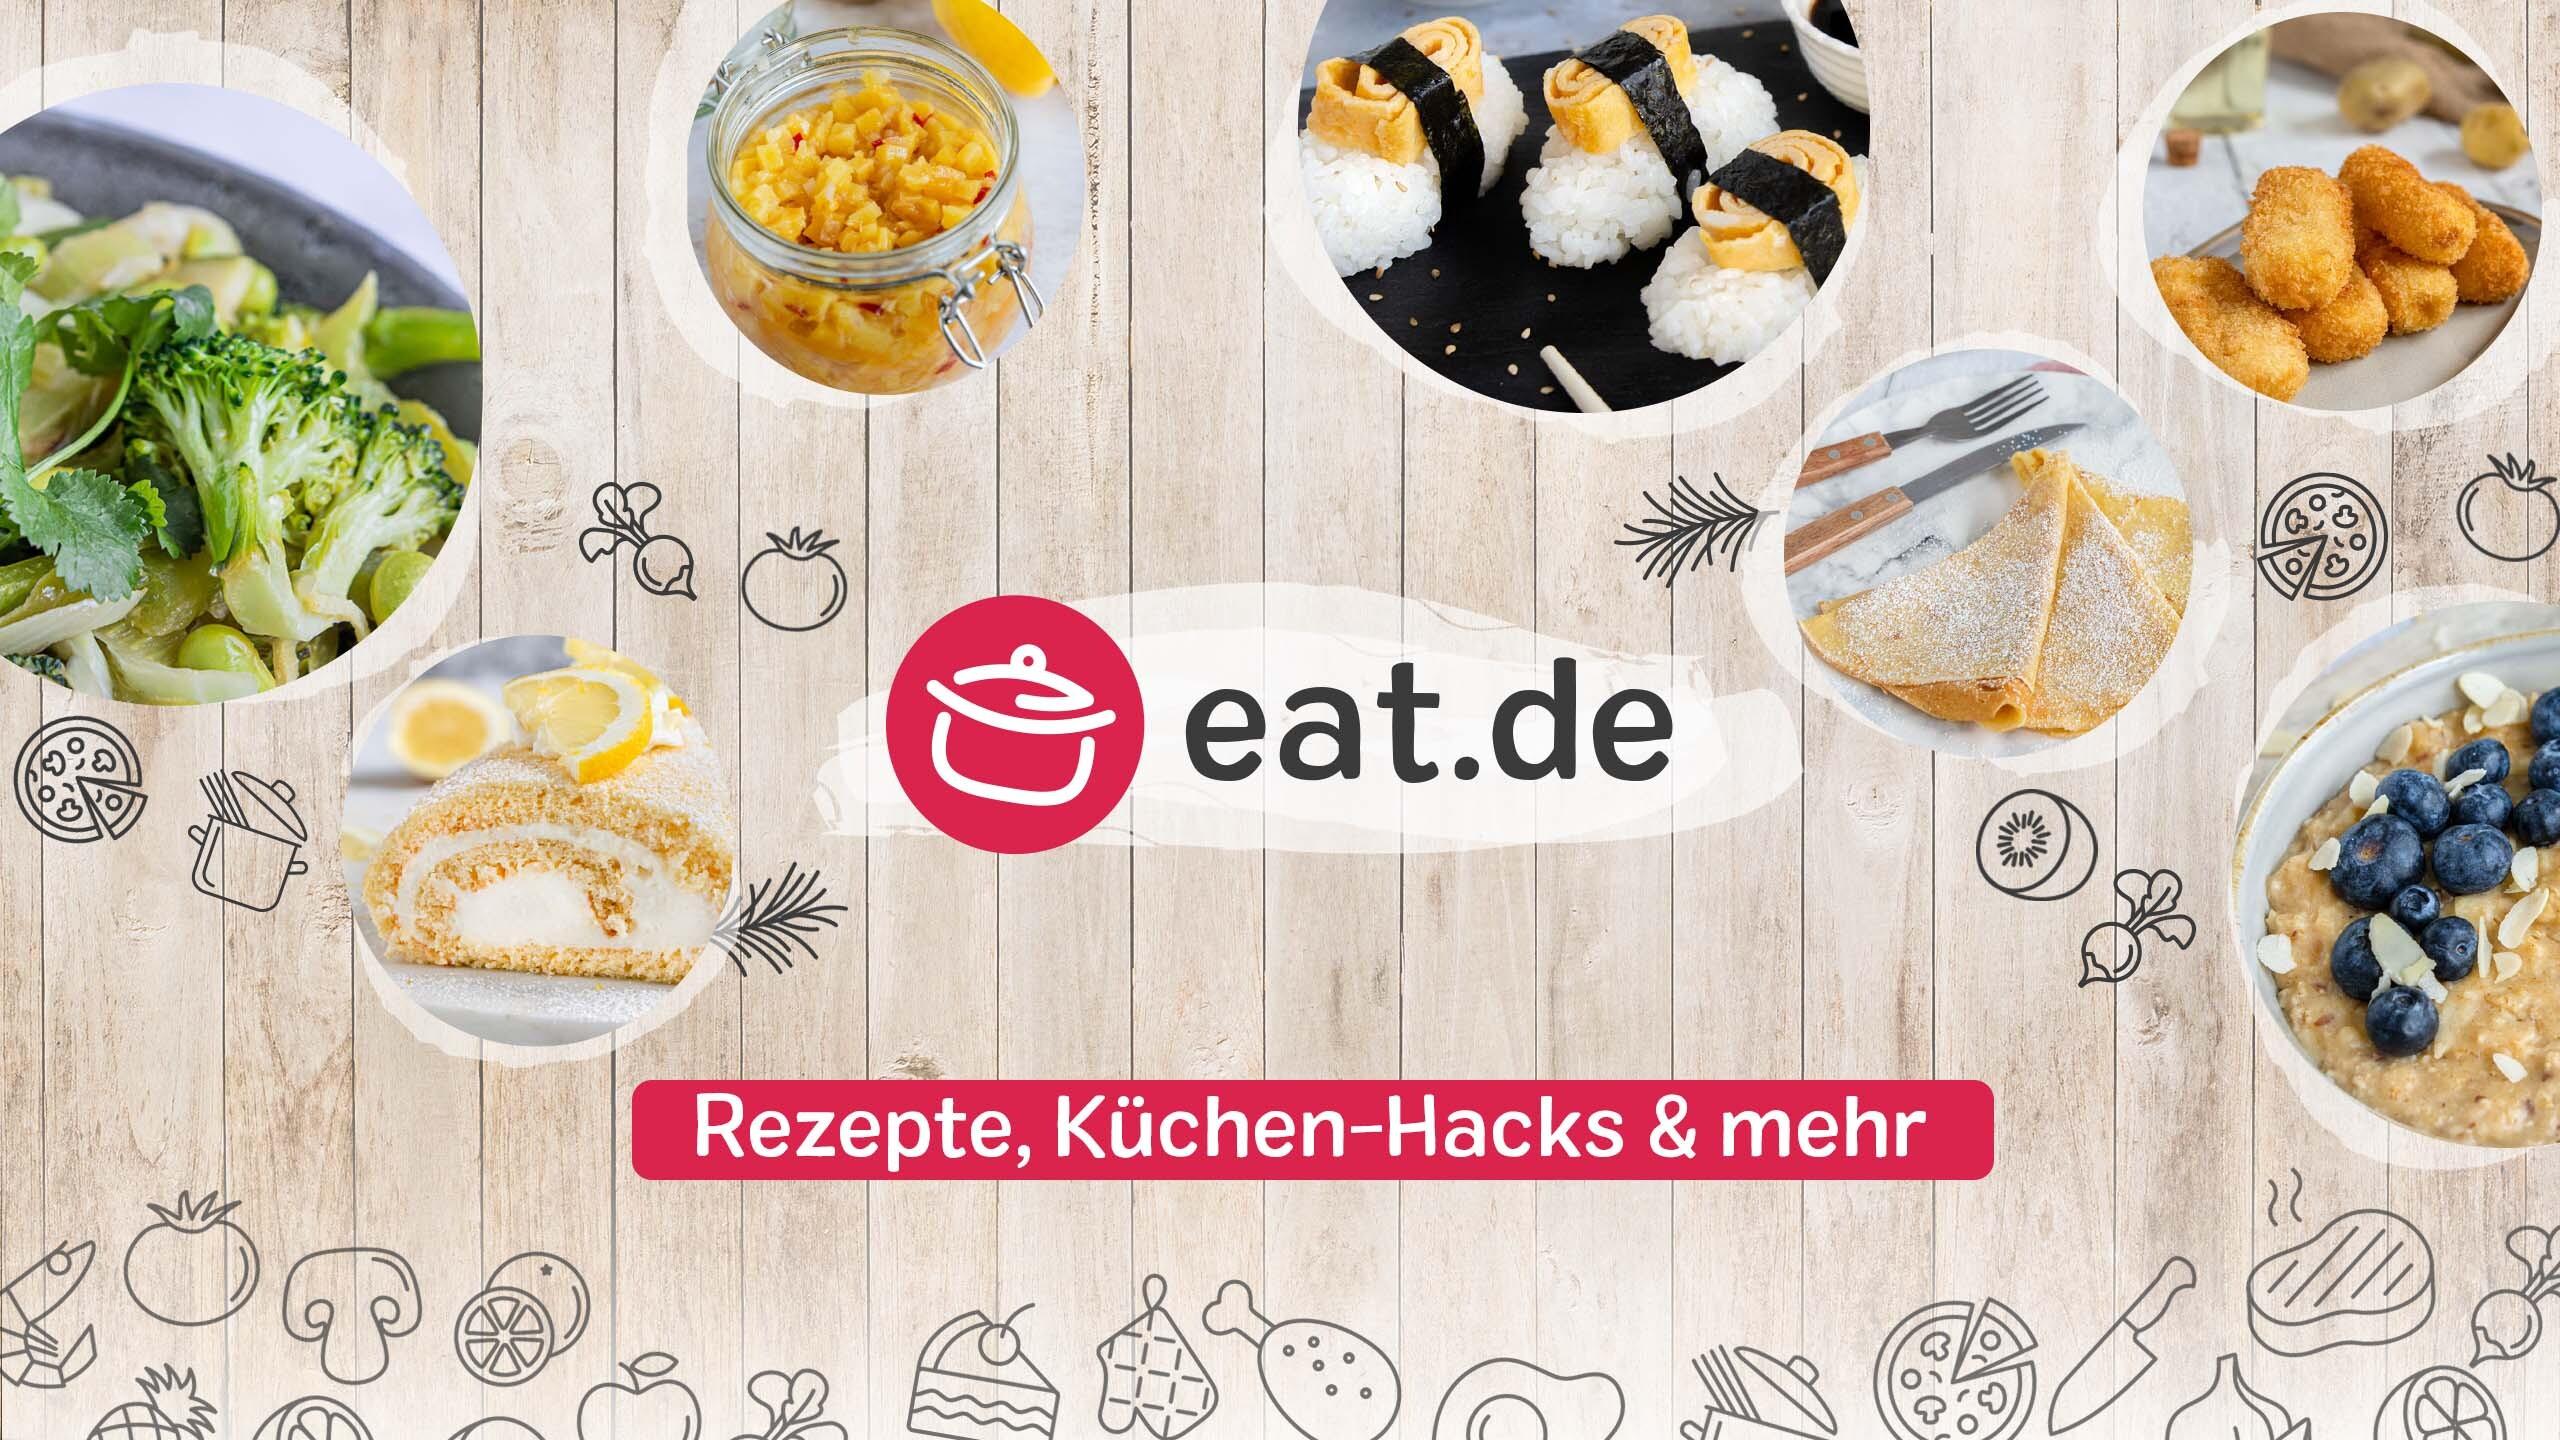 eat.de / startup von Zwickau / Background